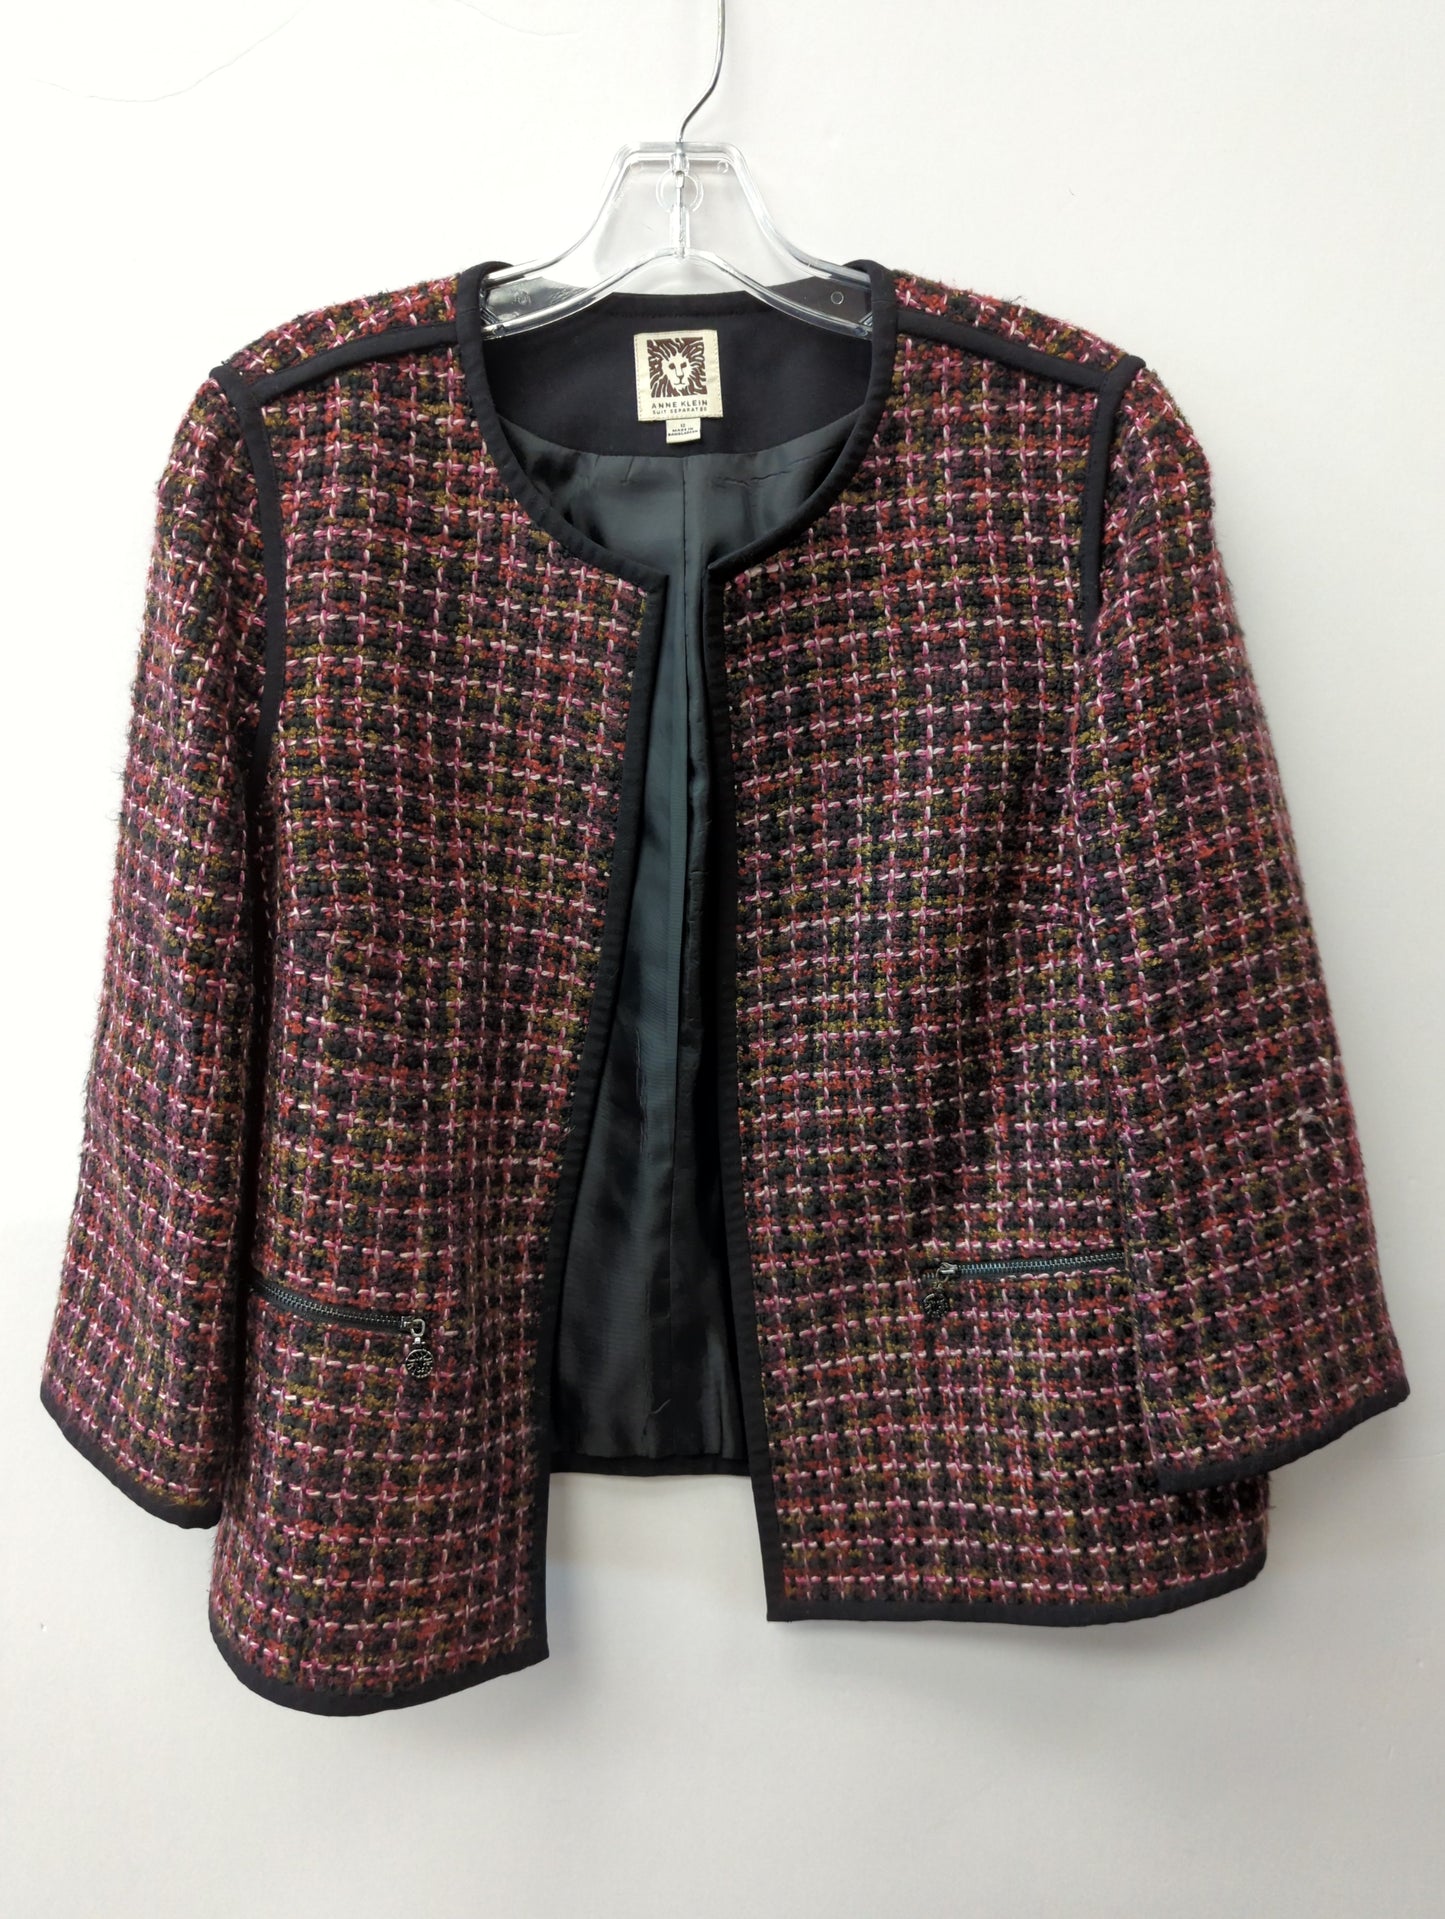 Jacket Other By Anne Klein  Size: L